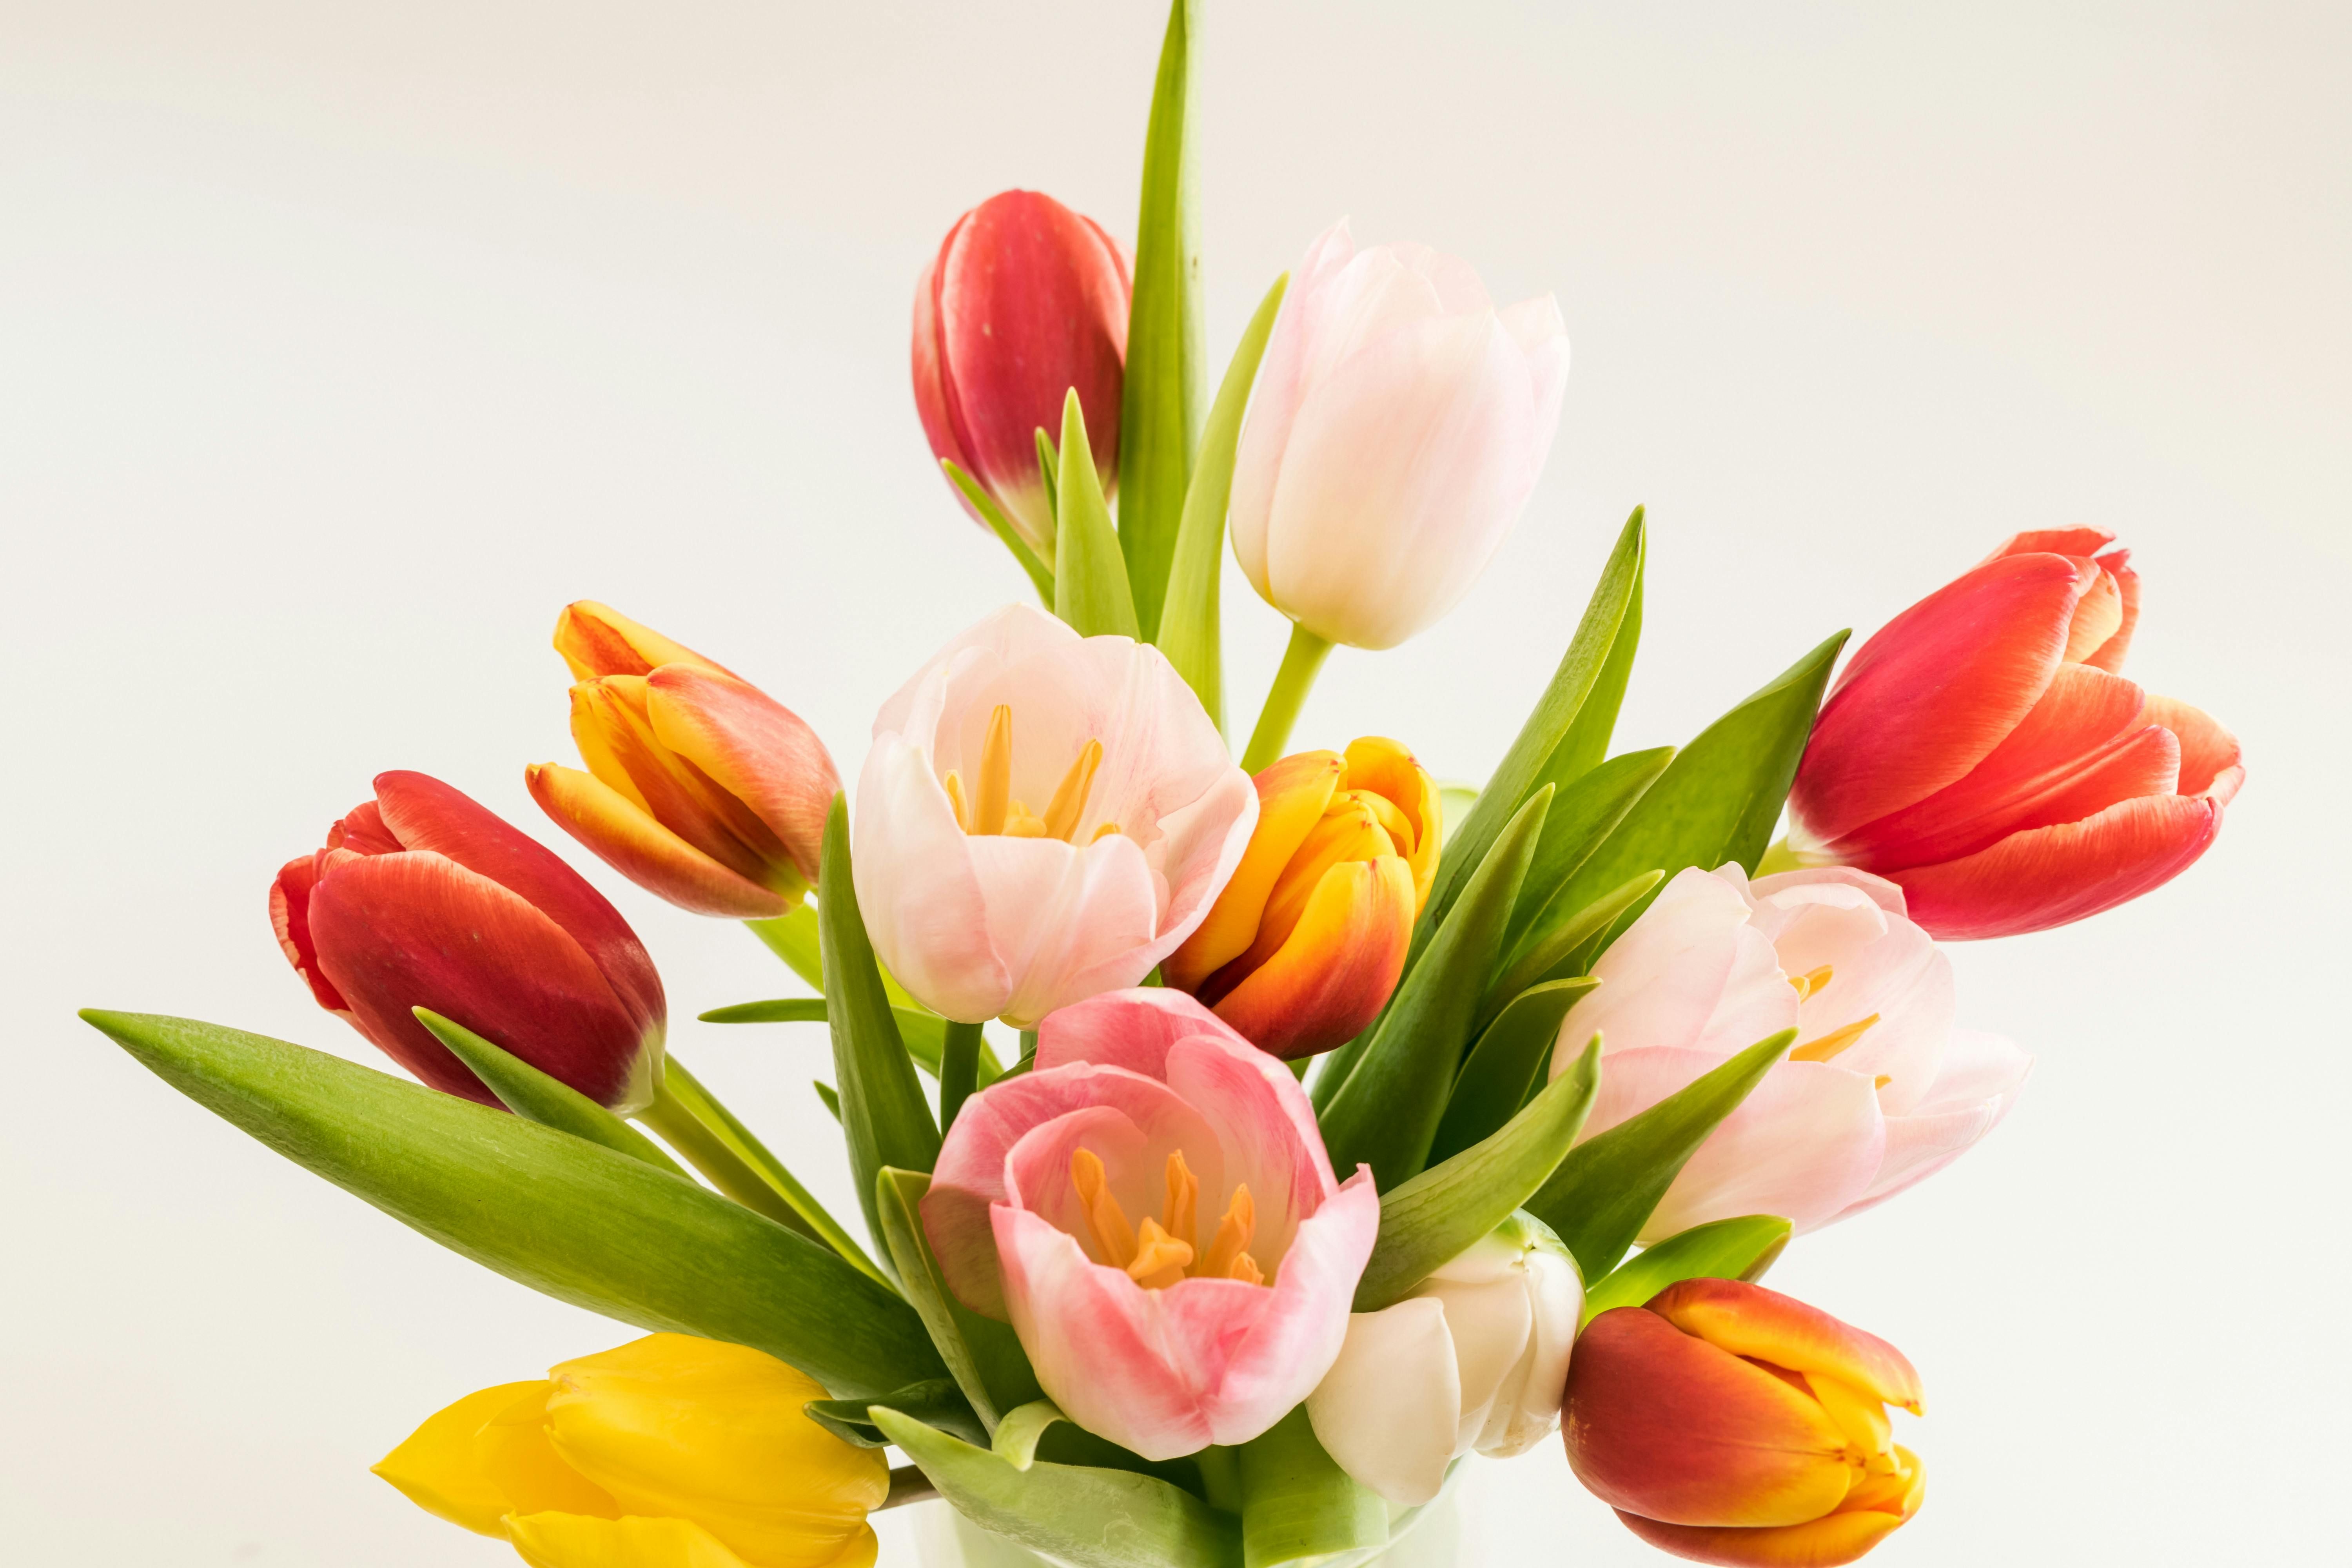 Ухаживать за тюльпанами в вазе нужно правильно